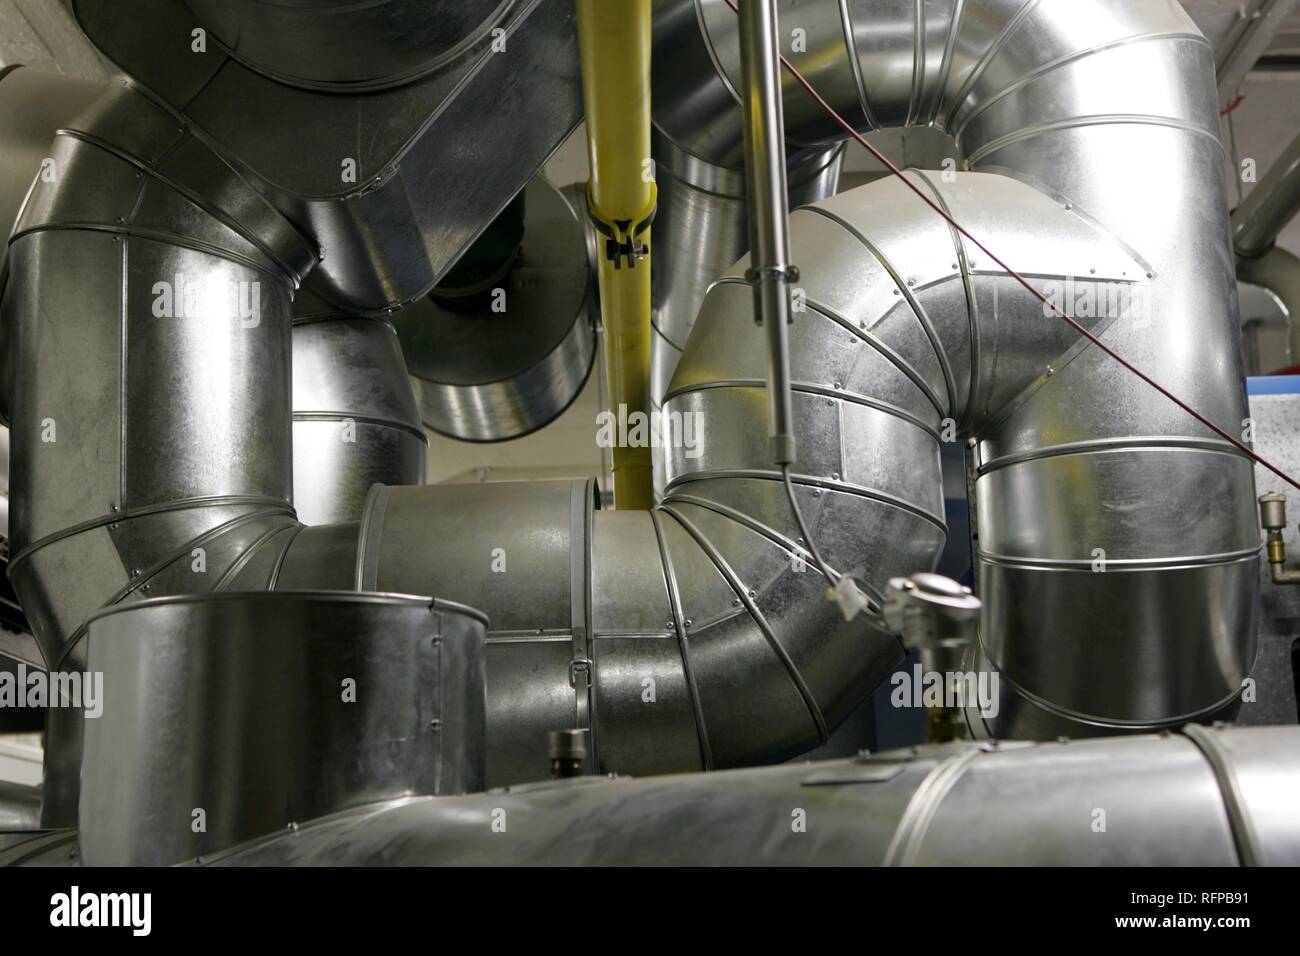 DEU, Allemagne : les tubes dans un grand système de chauffage. Banque D'Images